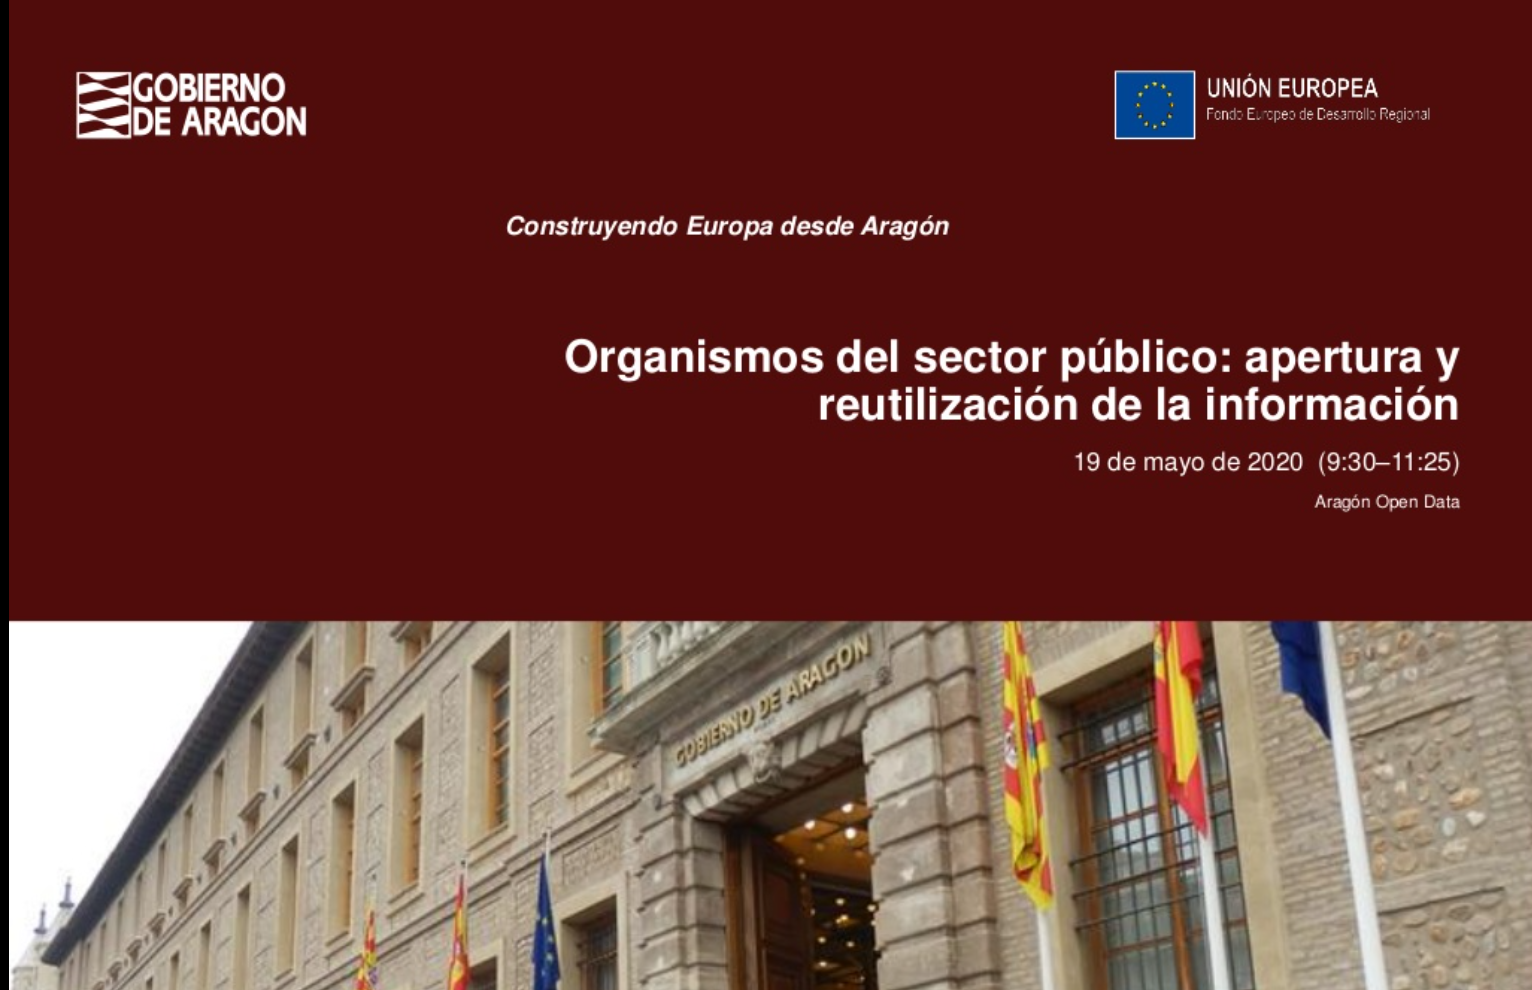 Portada de la presentación de Aragón Open Data Focus 